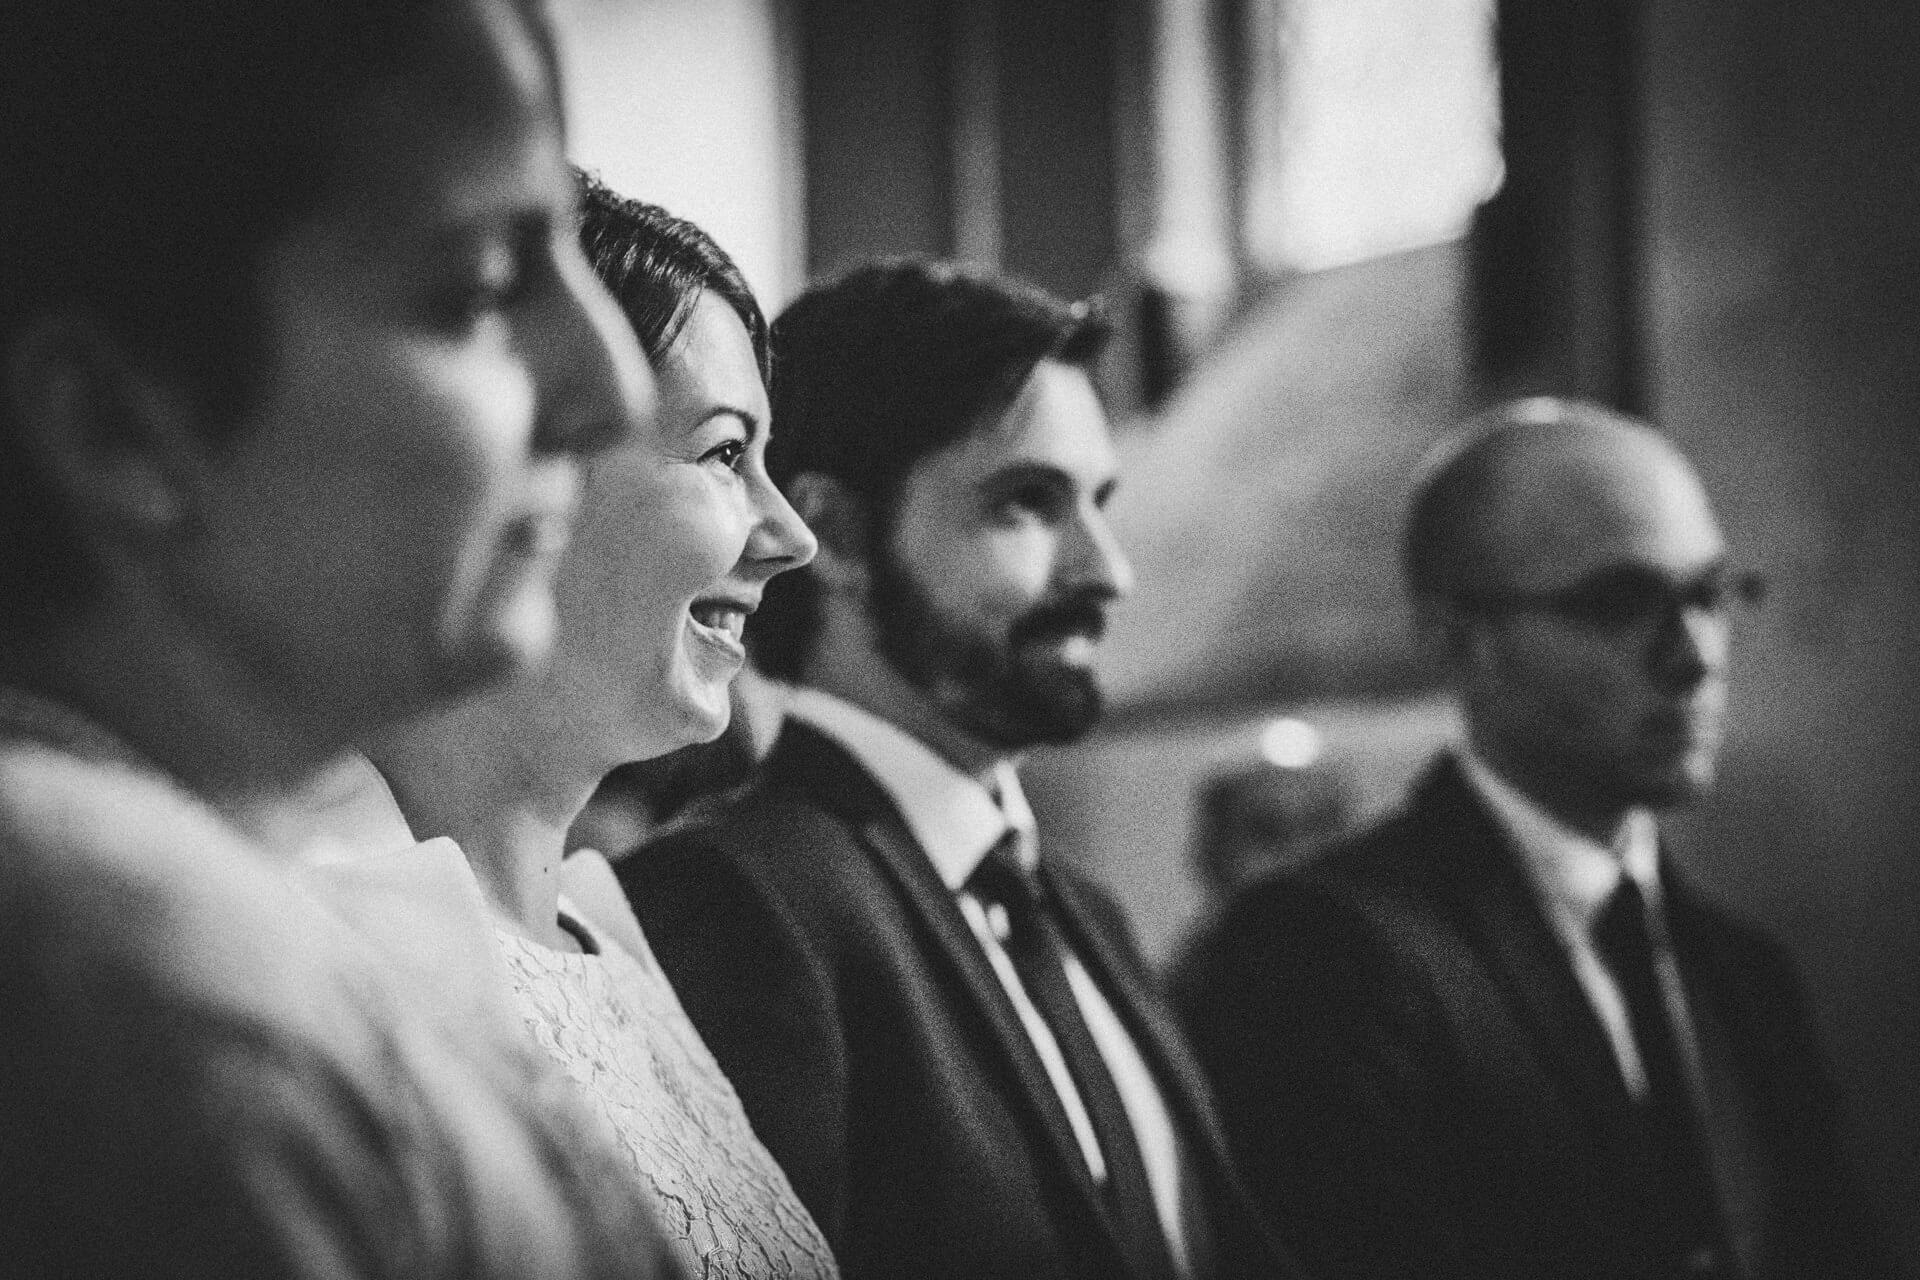 Standesamtliche Trauung im Kloster Altenberg - Hochzeitsfotograf Lahn-Dill-Kreis - ehrliche Hochzeitsfotografie